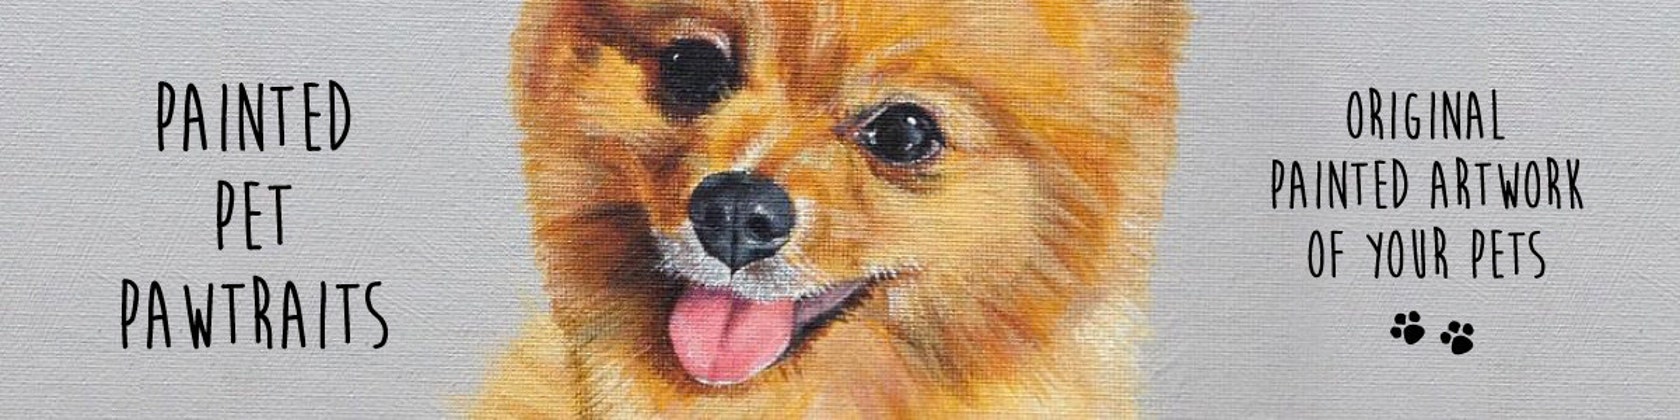 Custom Pet Portrait Paintings. Original by PaintedPetPawtraits